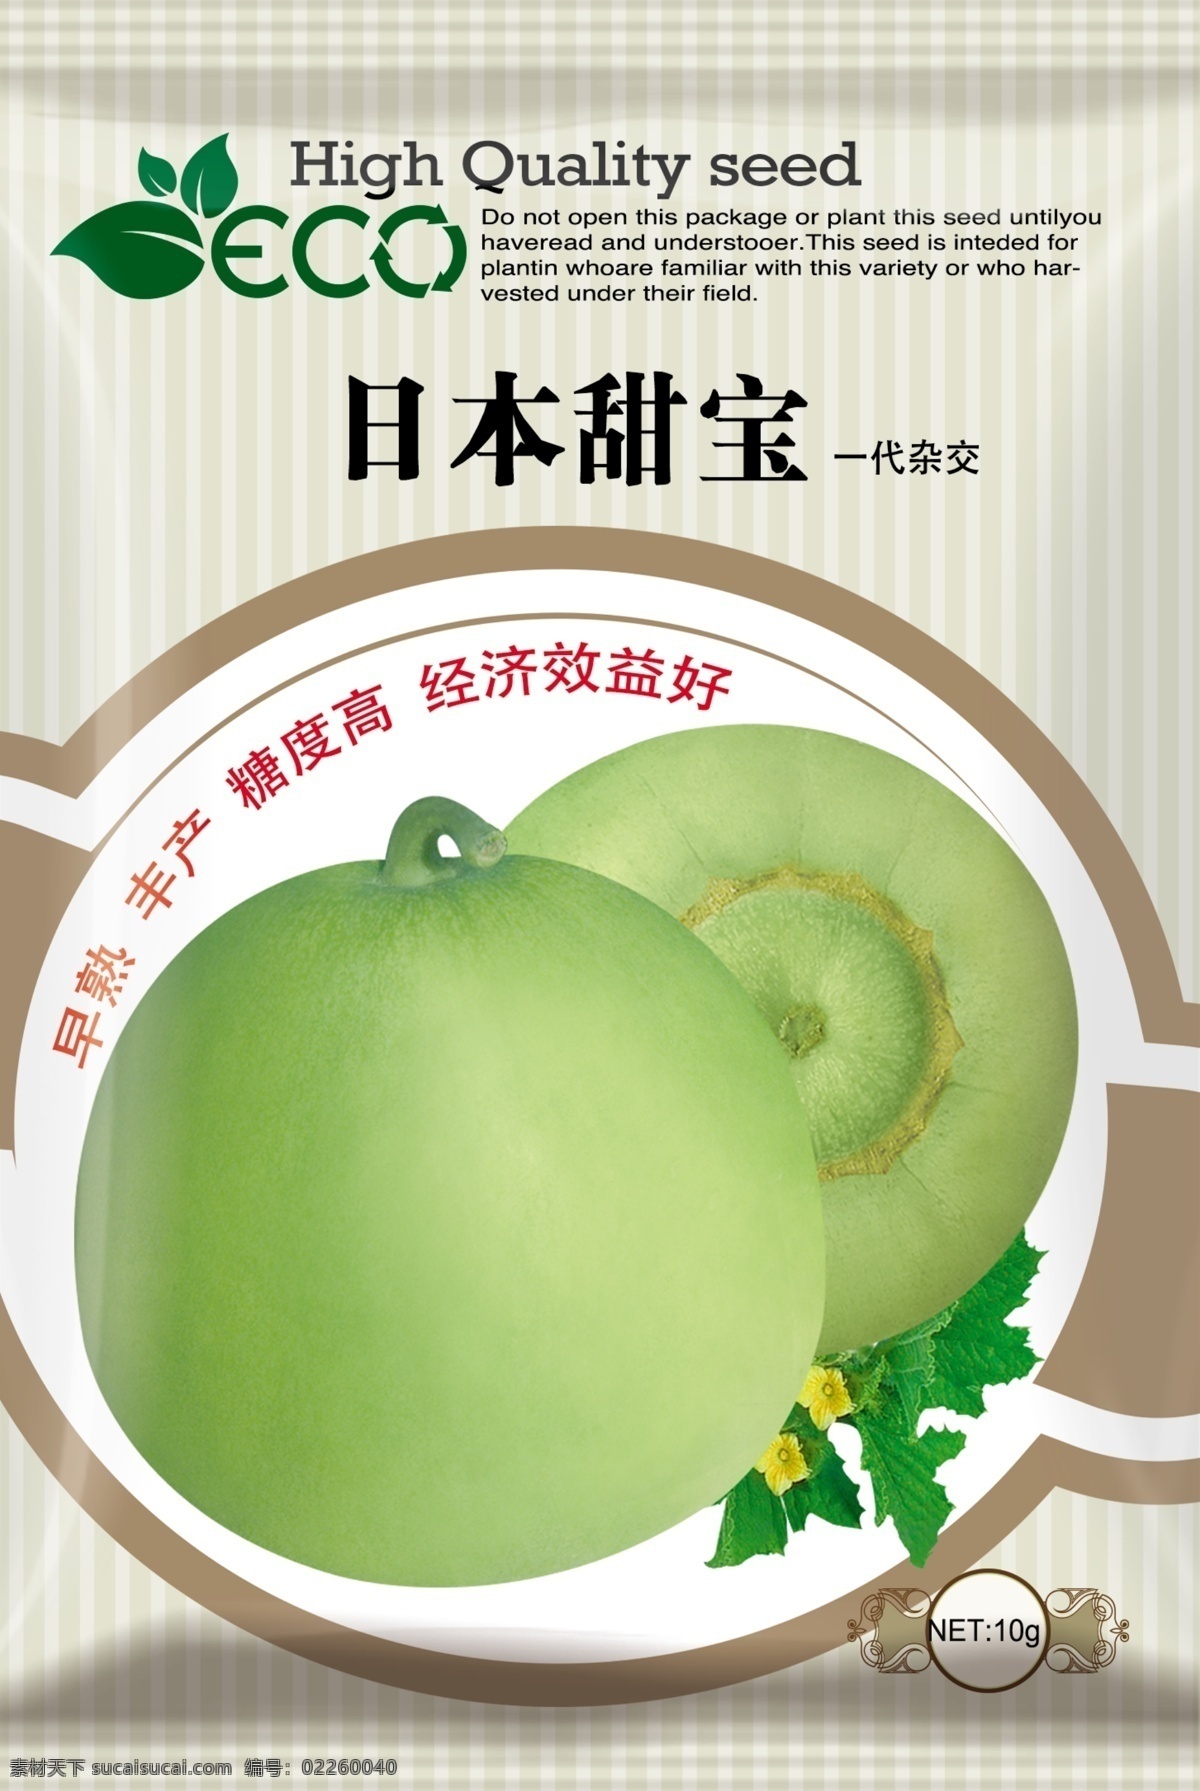 甜瓜包装袋 甜瓜包装 日本甜宝 种子包装袋 包装袋 种子包装 包装设计 广告设计模板 源文件